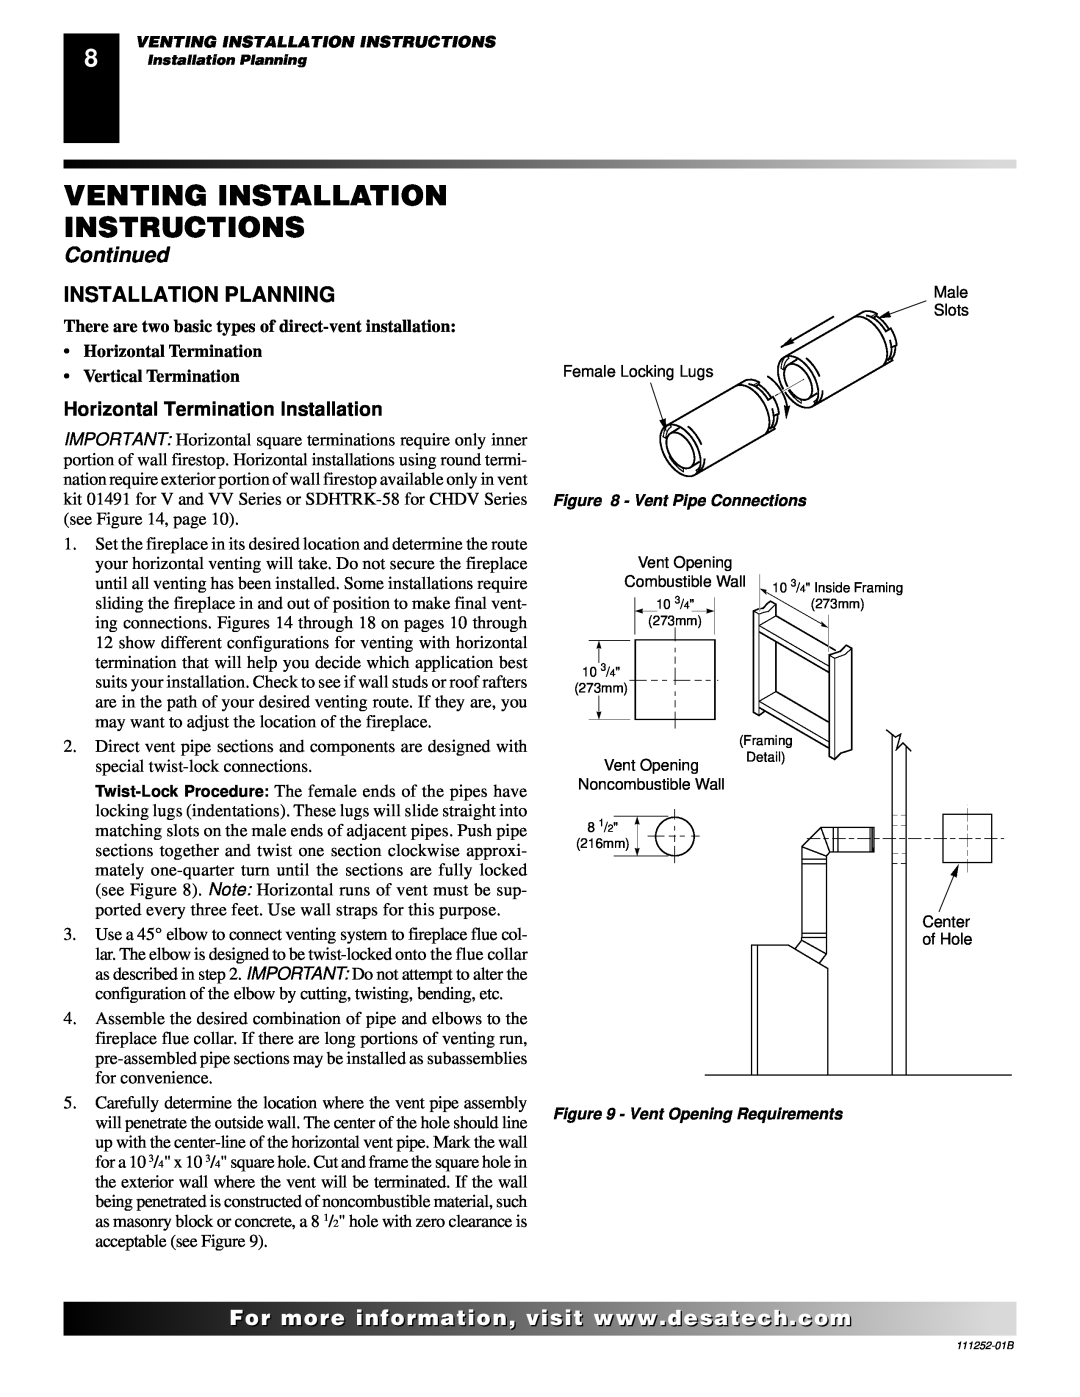 Desa (V)V36PA(1) Installation Planning, Horizontal Termination Installation, Venting Installation Instructions, Continued 